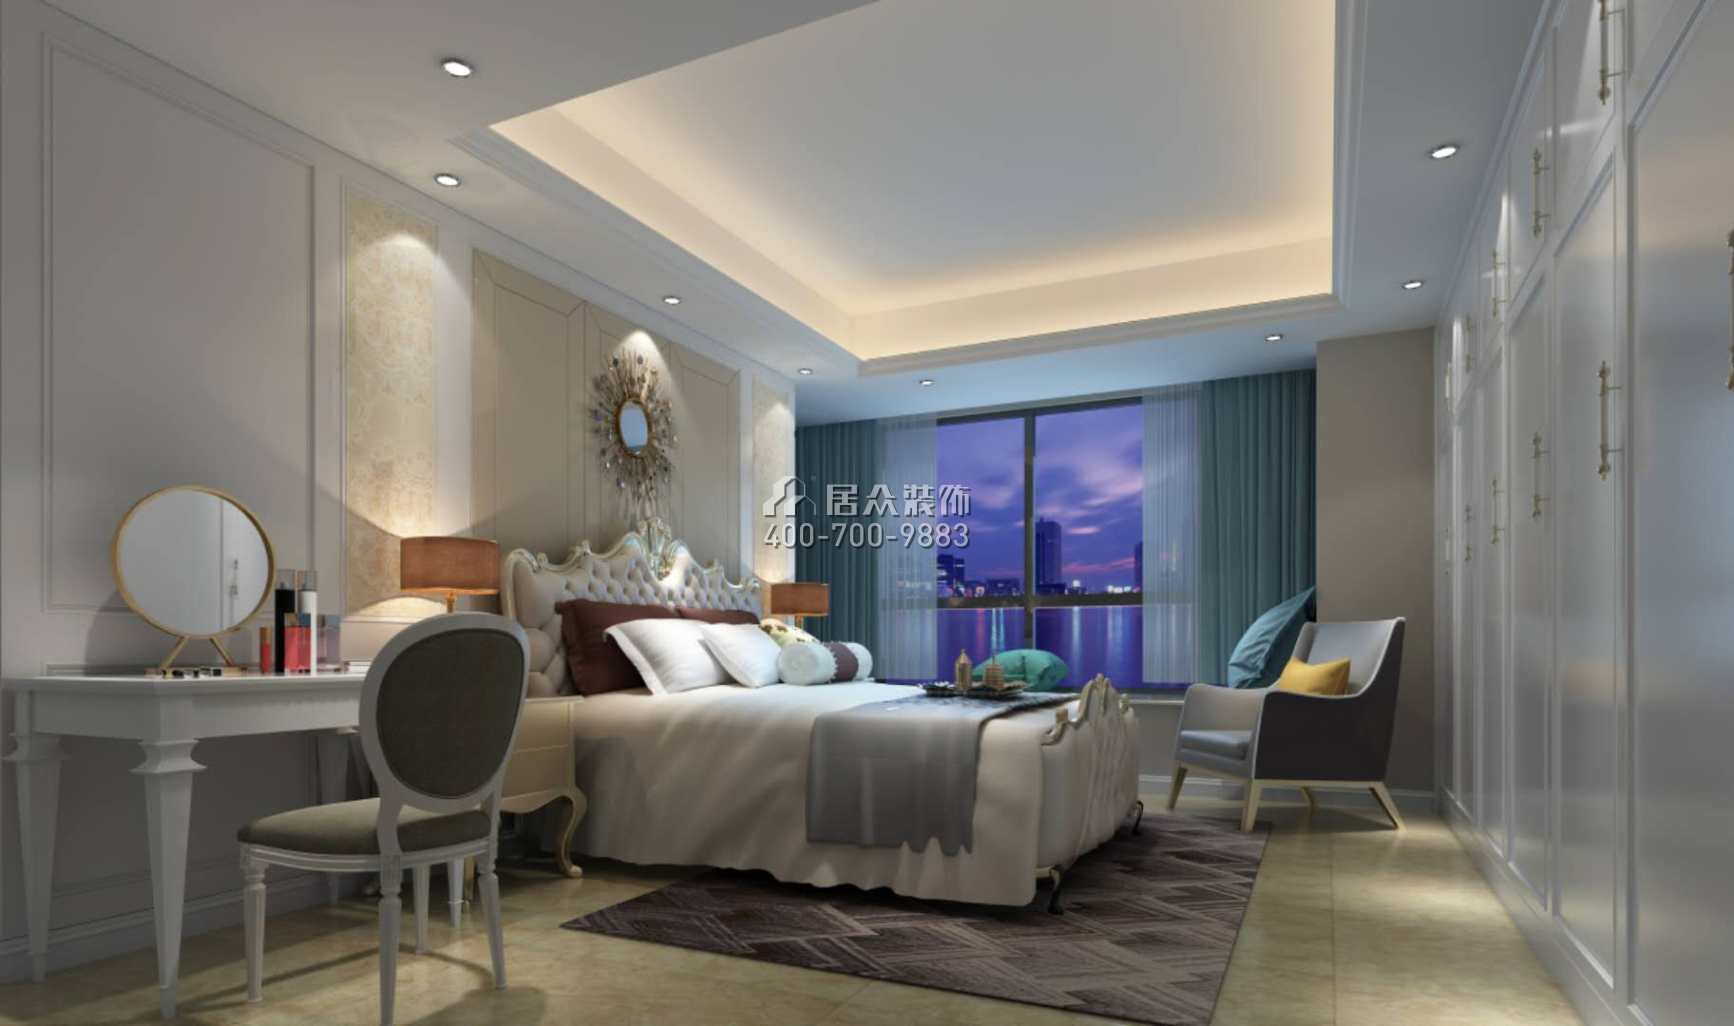 华发峰景湾136平方米欧式风格平层户型卧室装修效果图